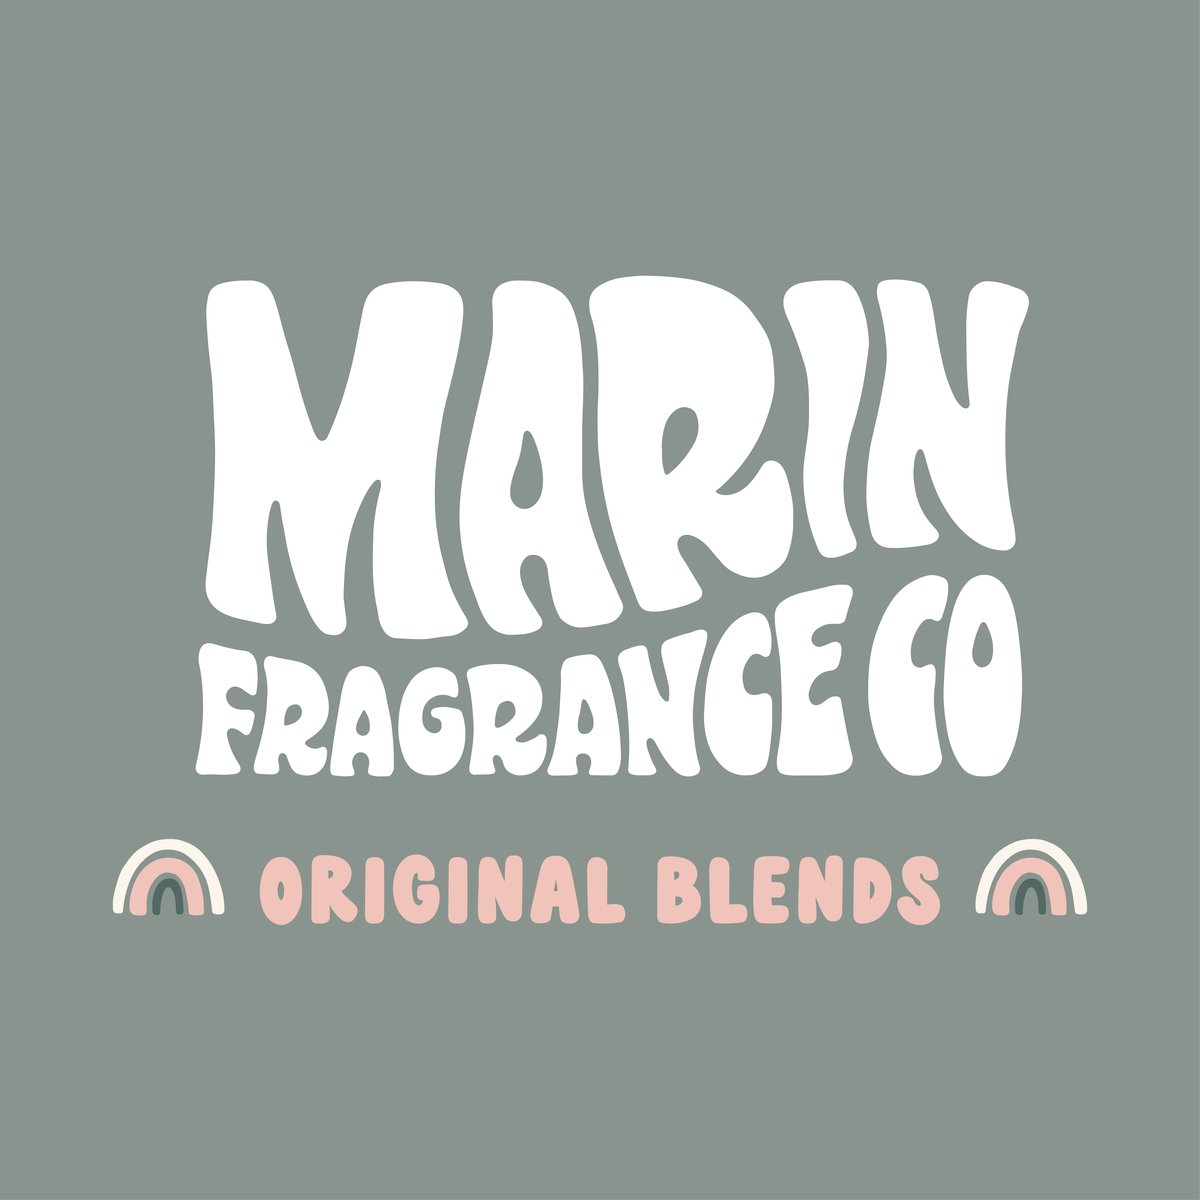 Image of Marin Fragrance Co. Original Blends